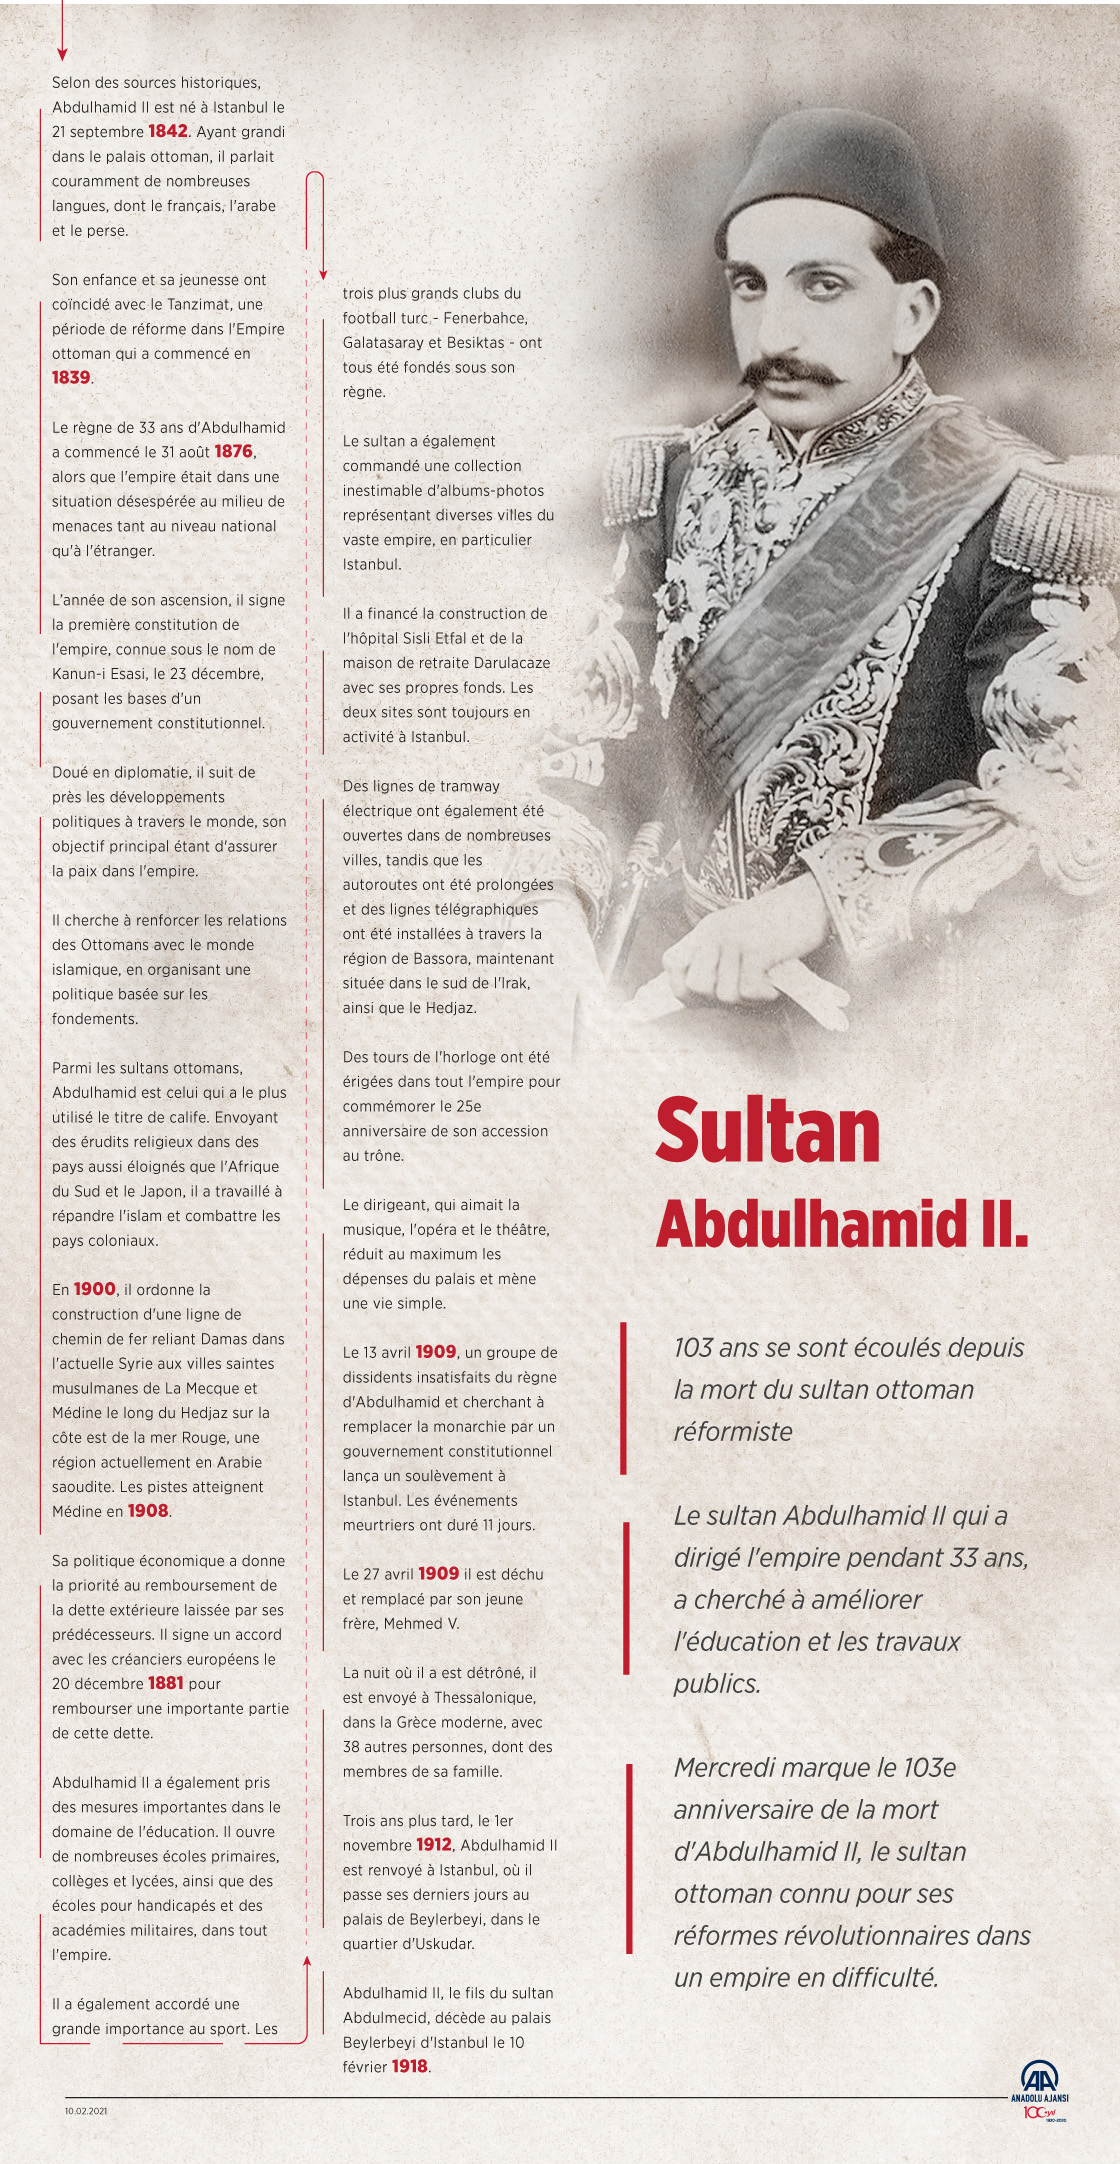 Mercredi marque le 103e anniversaire de la mort d'Abdulhamid II,